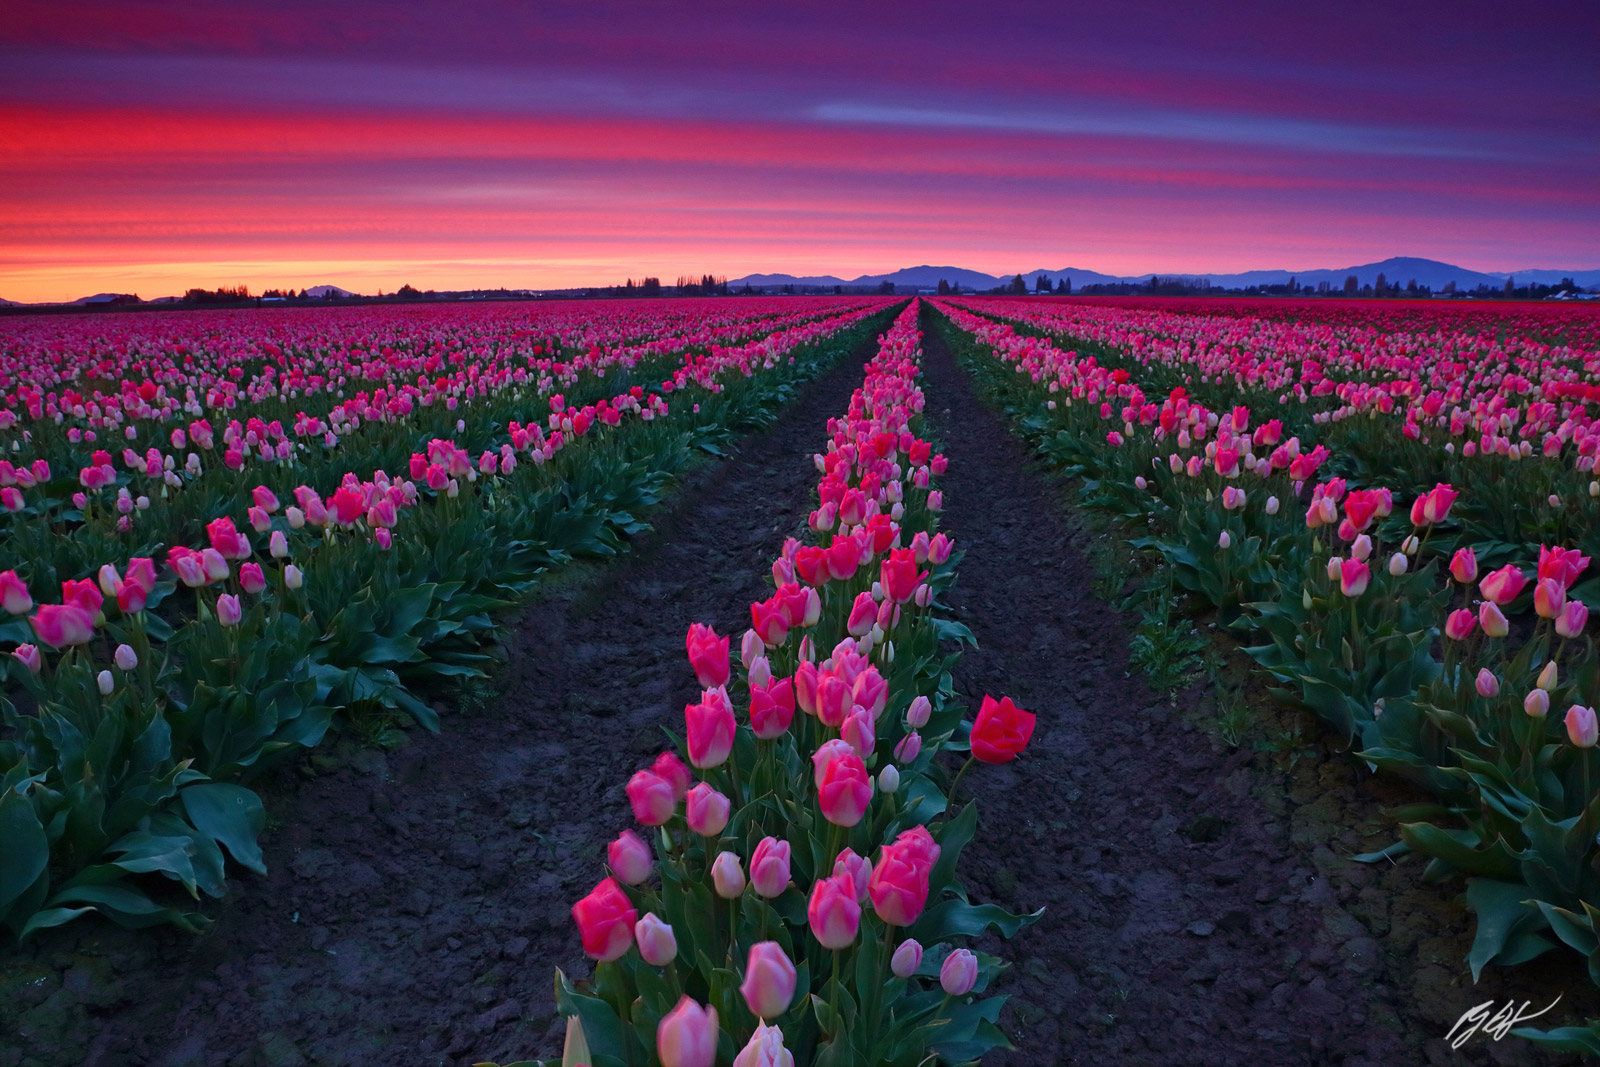 Sunset over Tulip Fields, Roozengaarde, Fields in Skagit Valley Washington